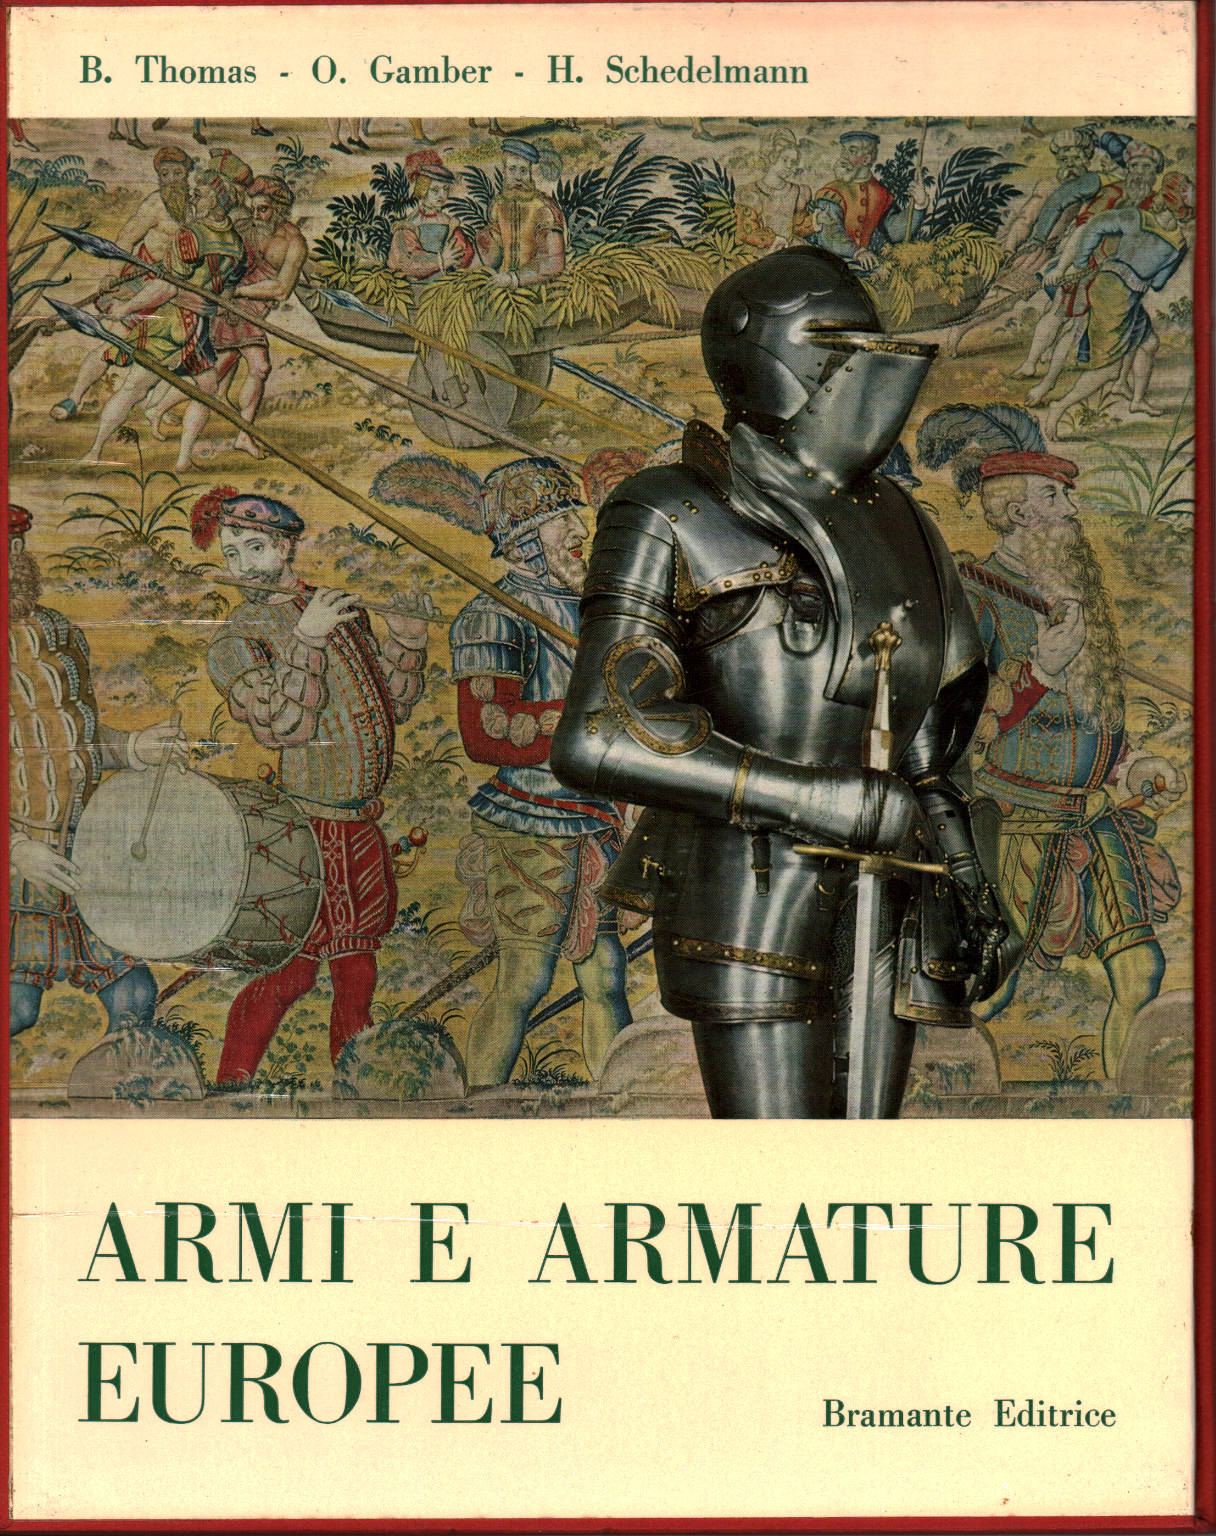 European Arms and Armor, Bruno Thomas Ortwin Gamber Hans Schedelmann